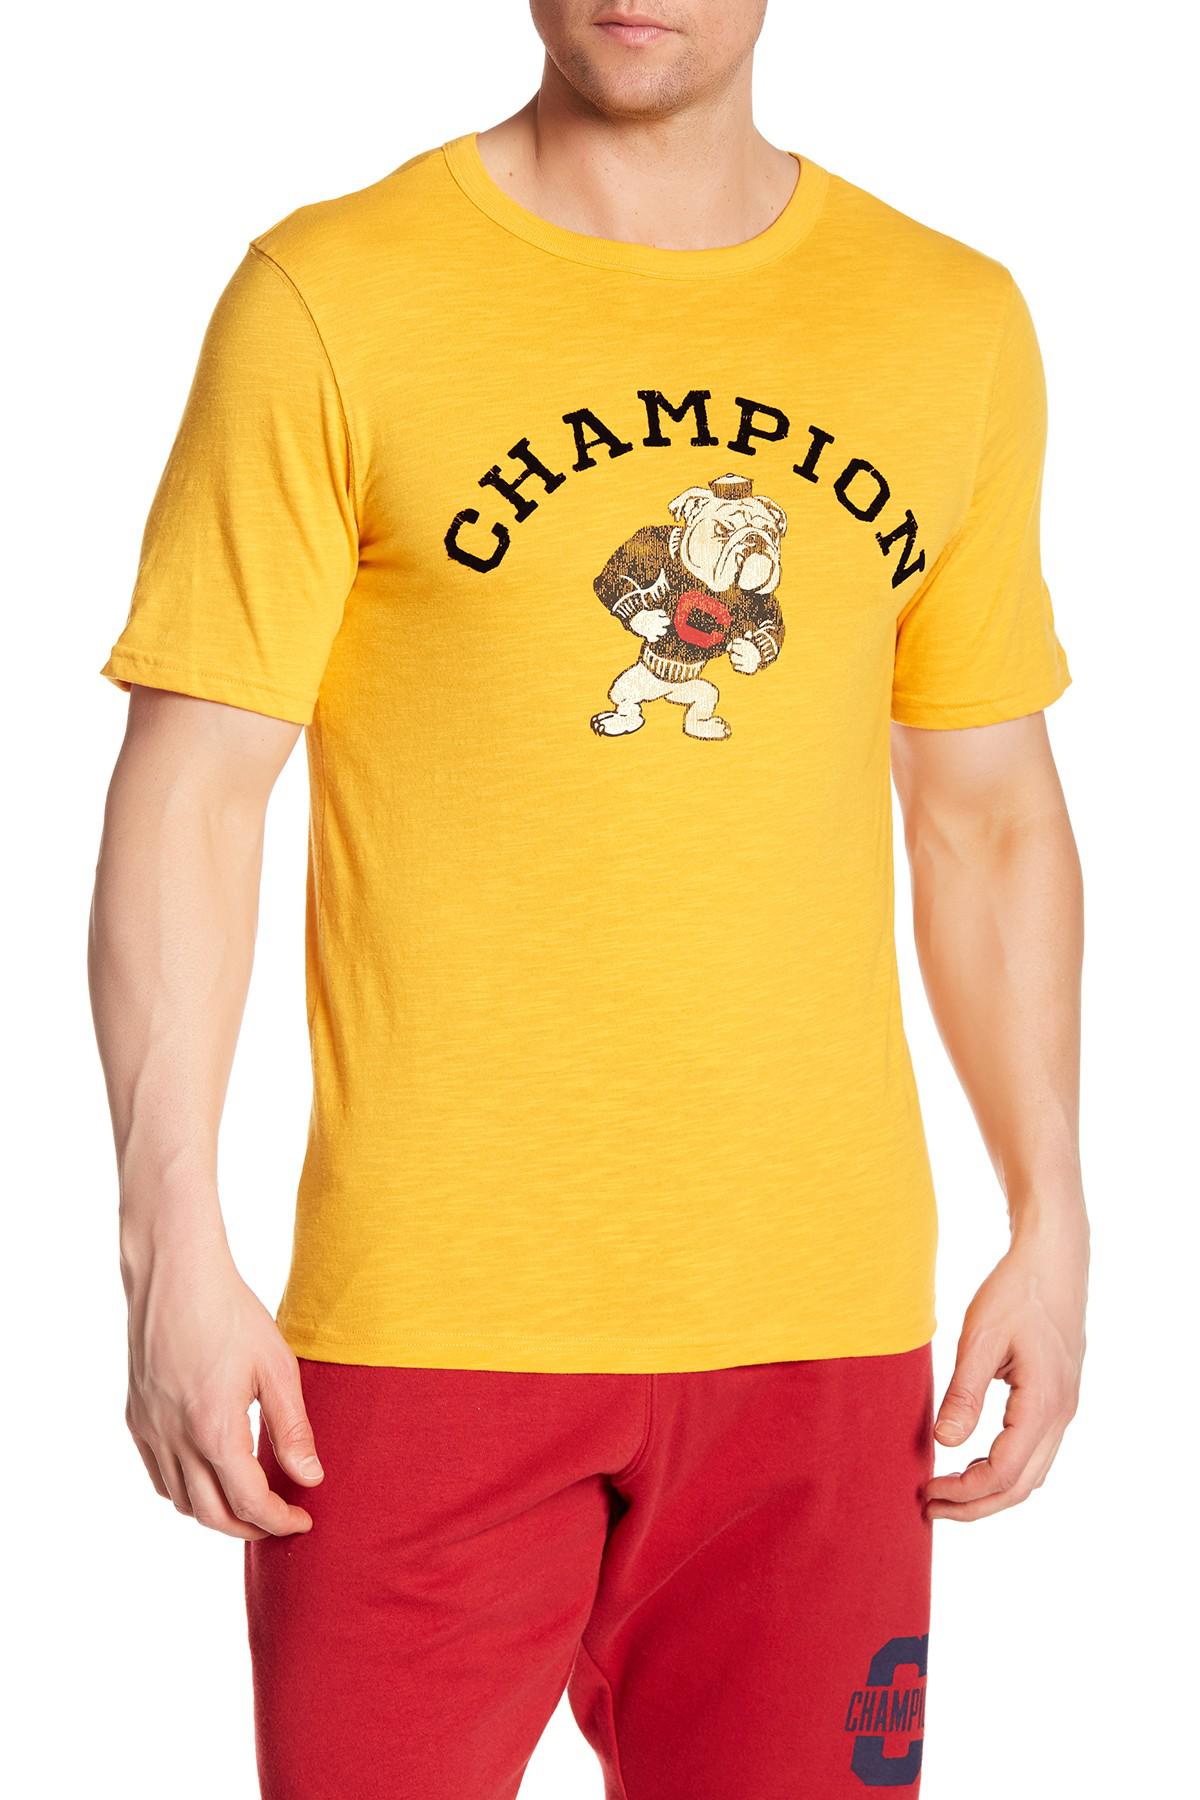 bulldog champion shirt